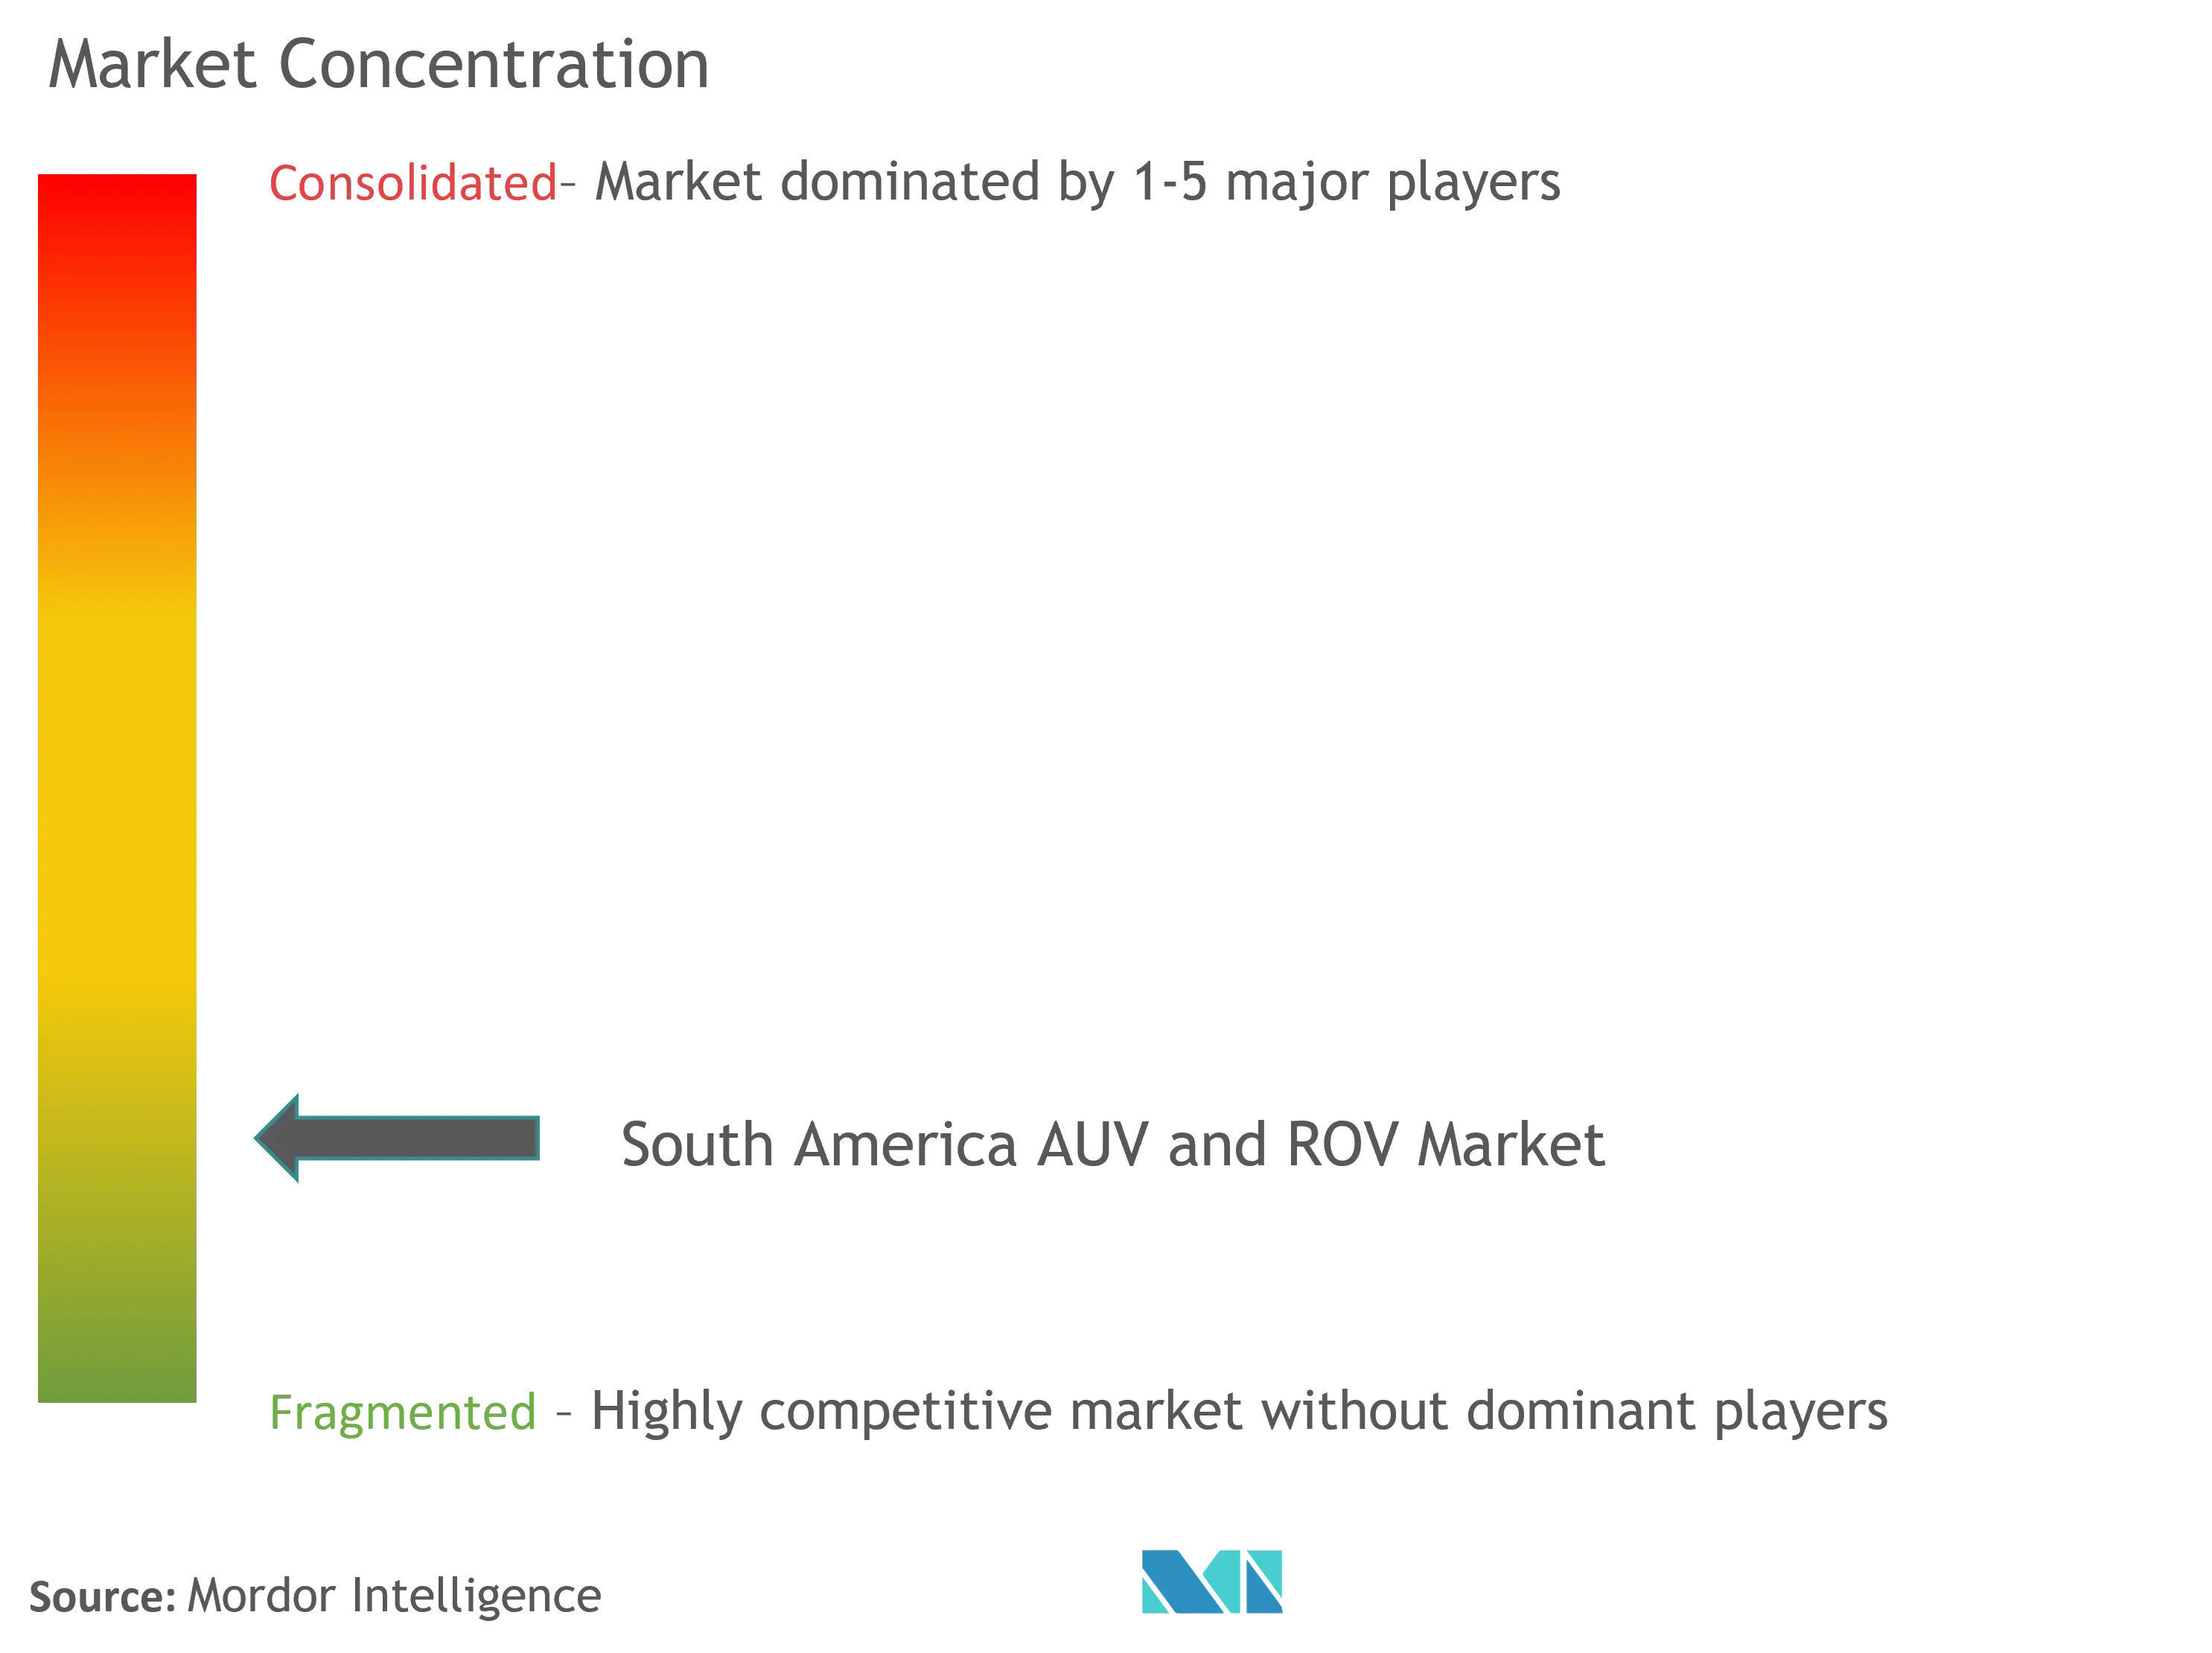 南米のAUVとROV市場の集中